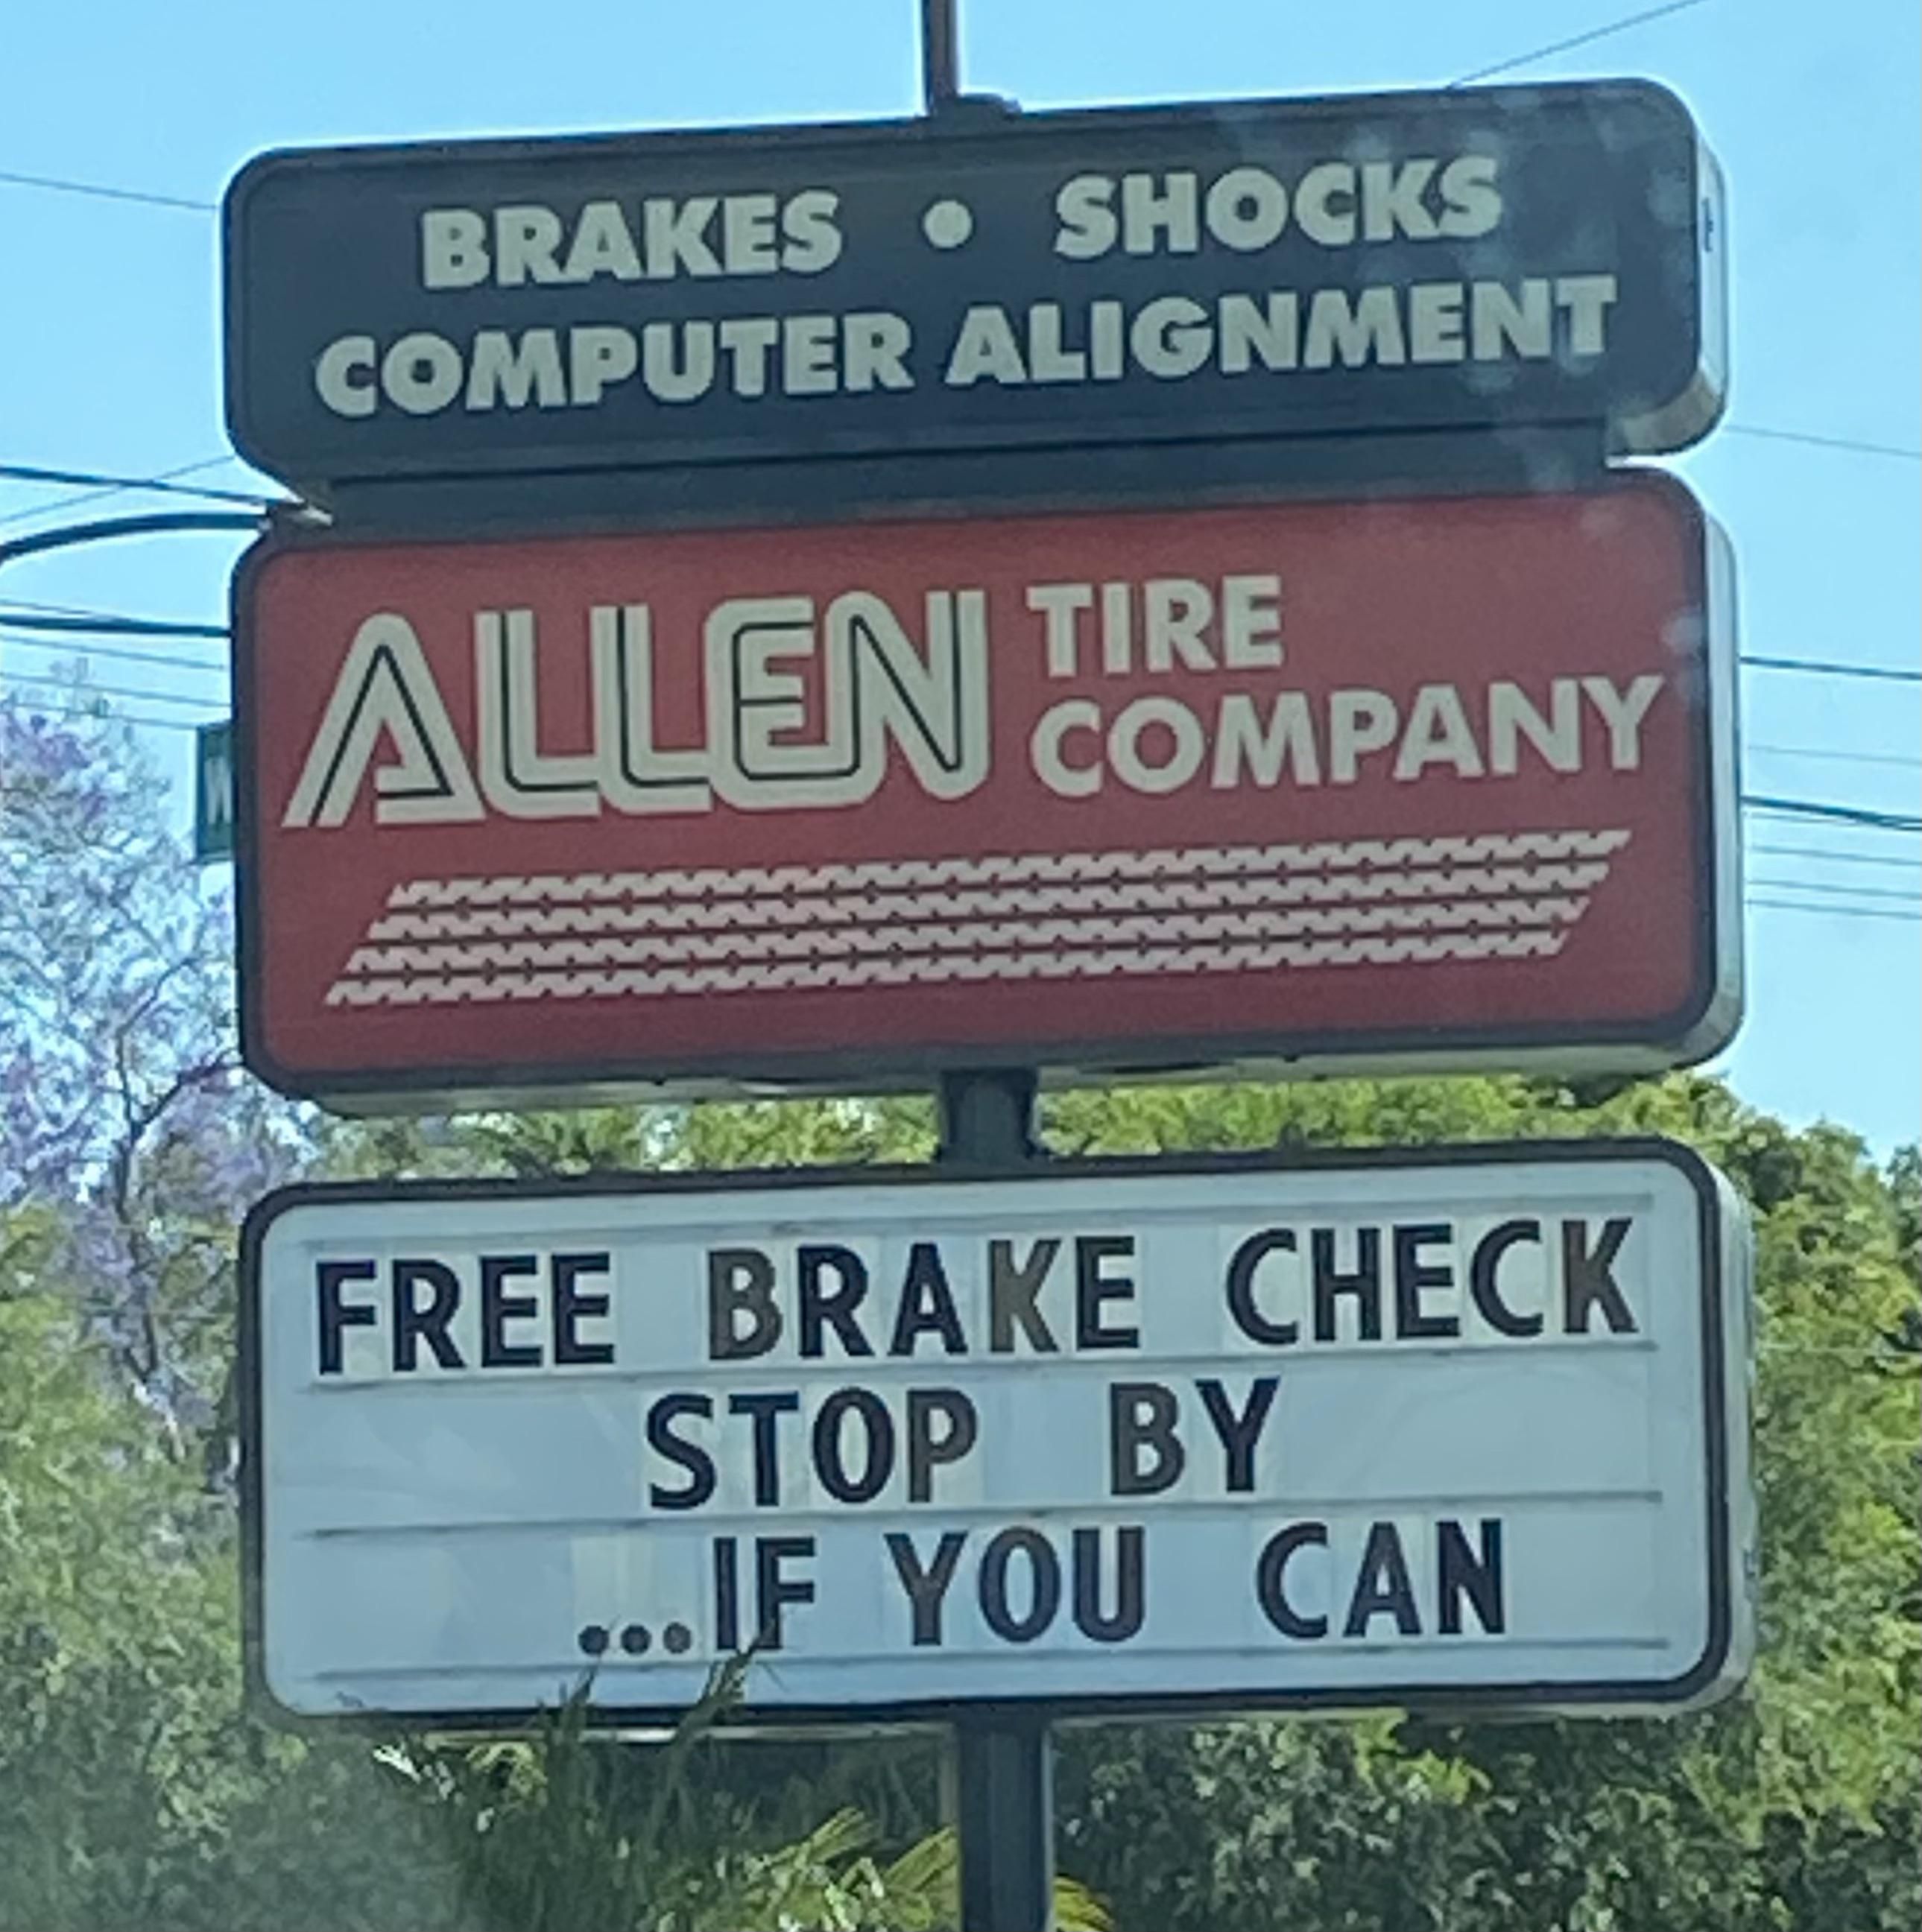 Classic Allen Tire Co